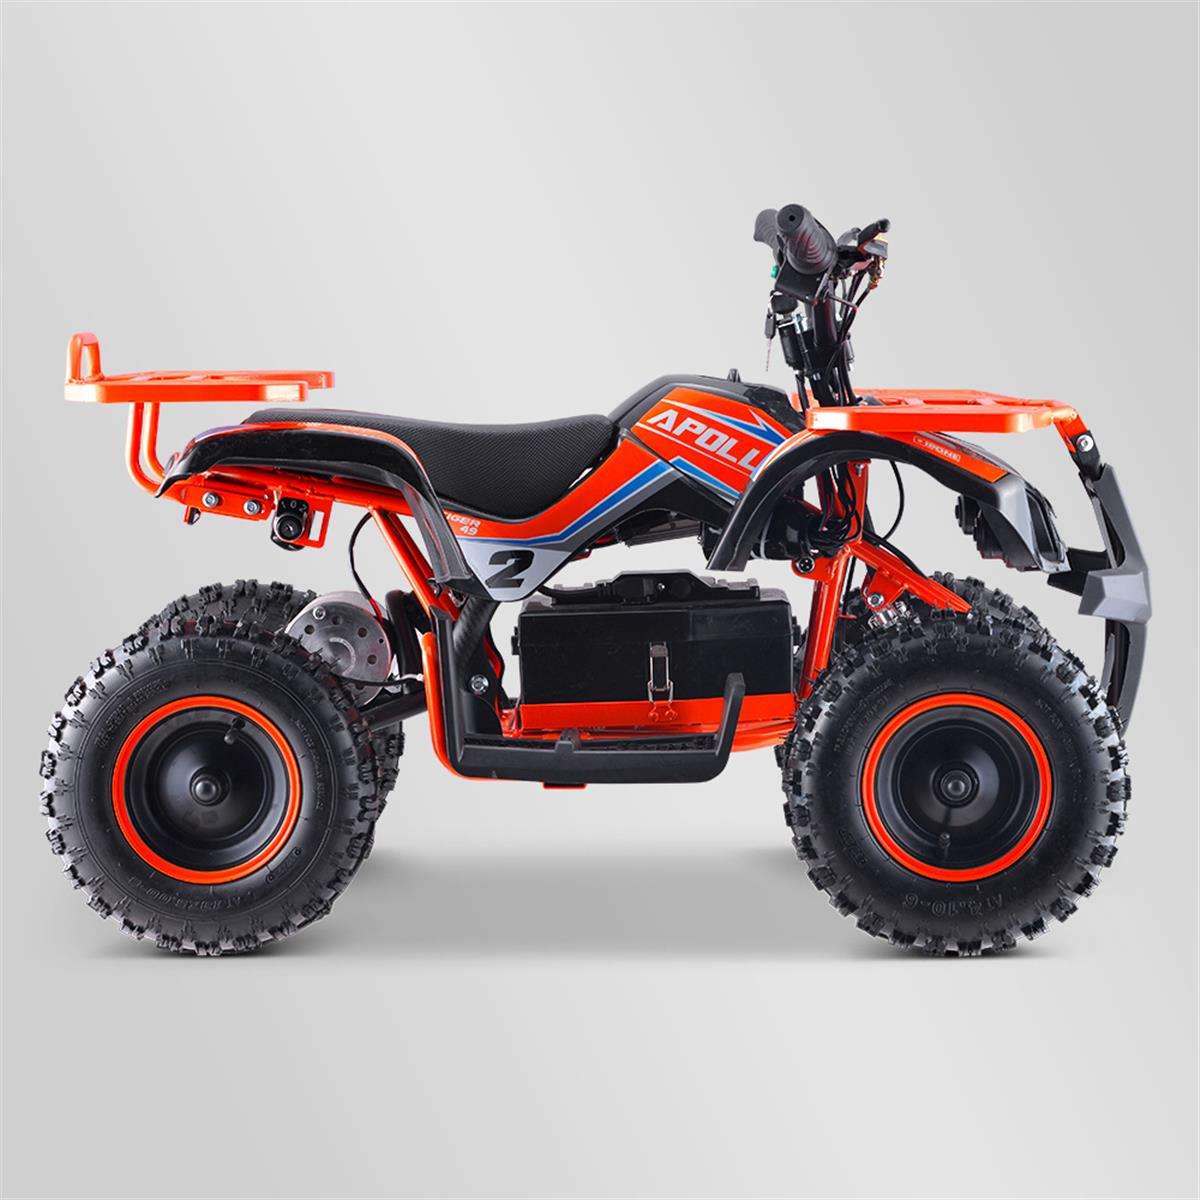 Quad Electrique 800w Enfant Orange Utilitaire - Extrem Motos